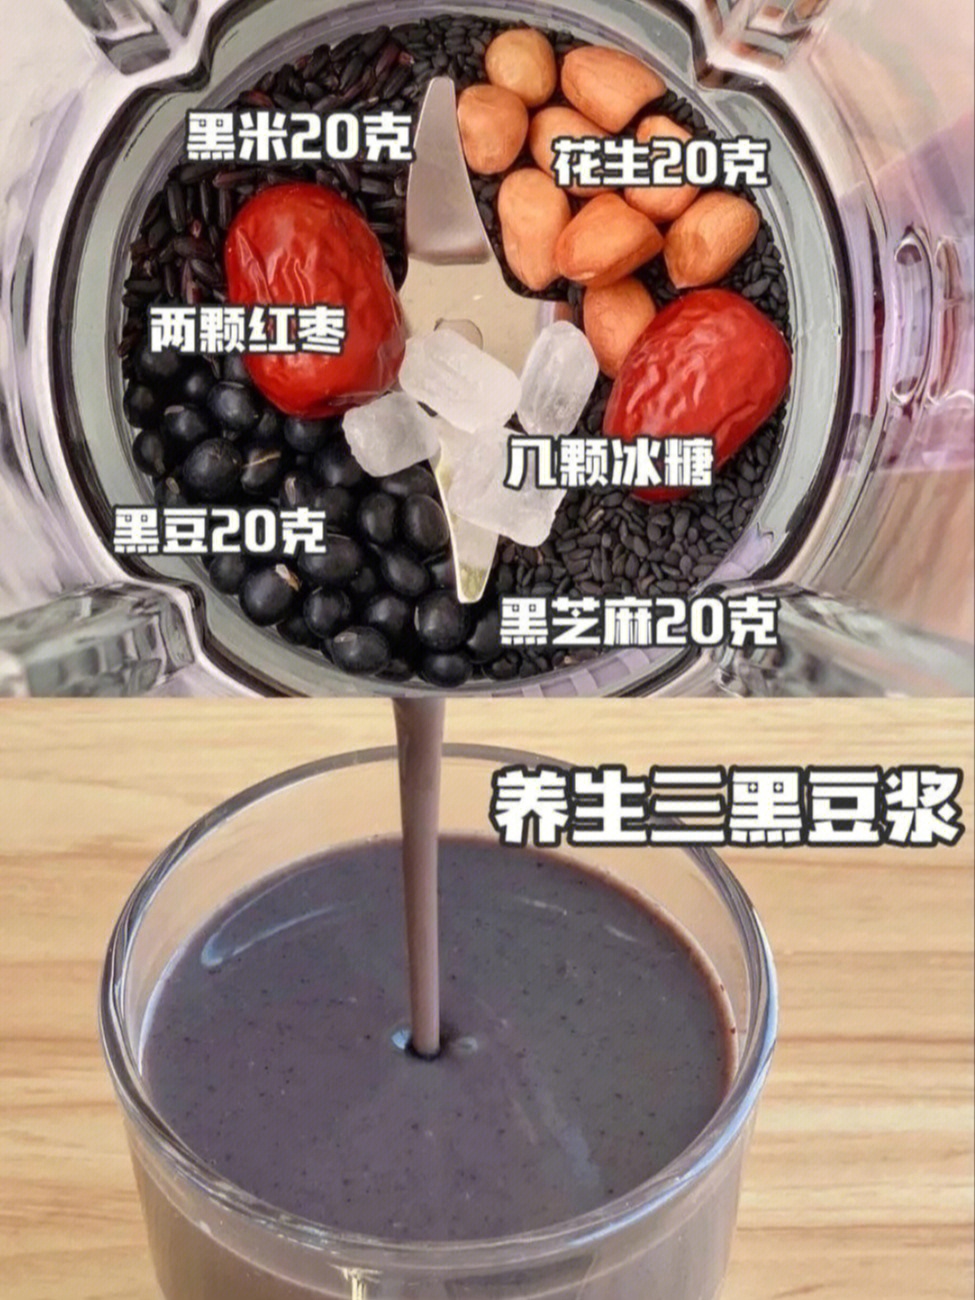 养生三黑浓豆浆:黑米20克,花生20克,两颗红枣,黑豆20克,黑芝麻20克